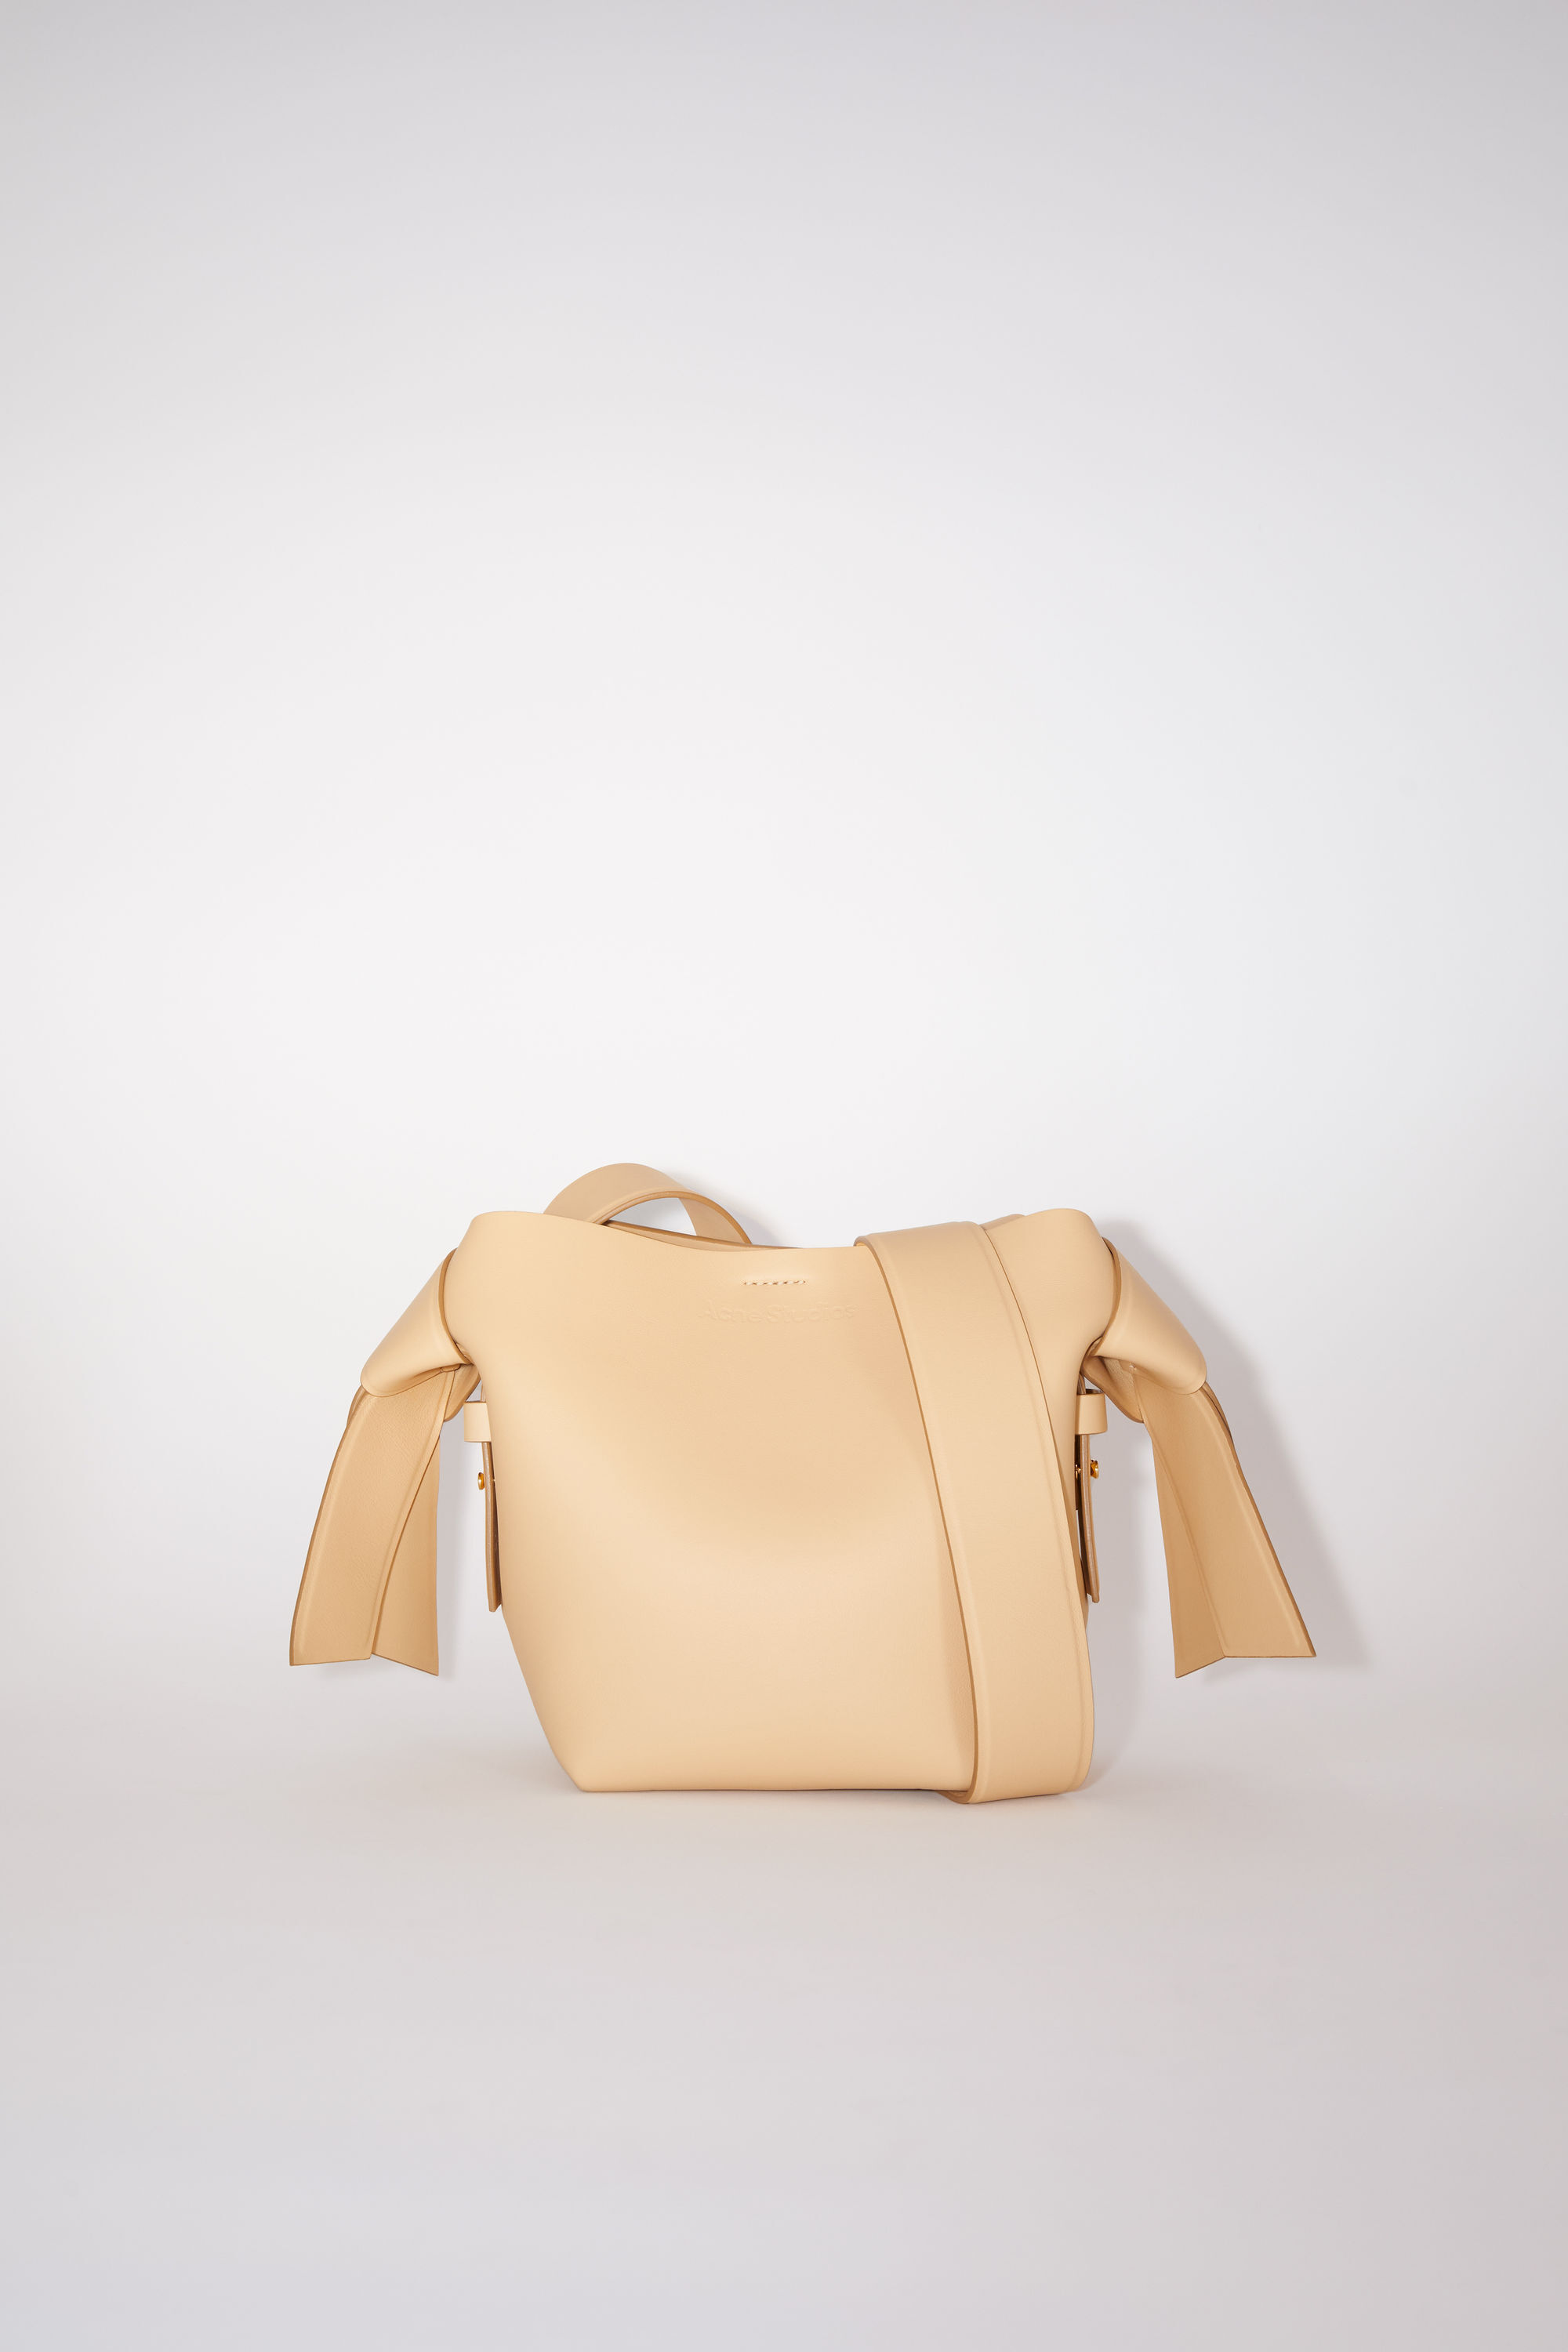 Acne Studios - Musubi mini shoulder bag - Camel brown